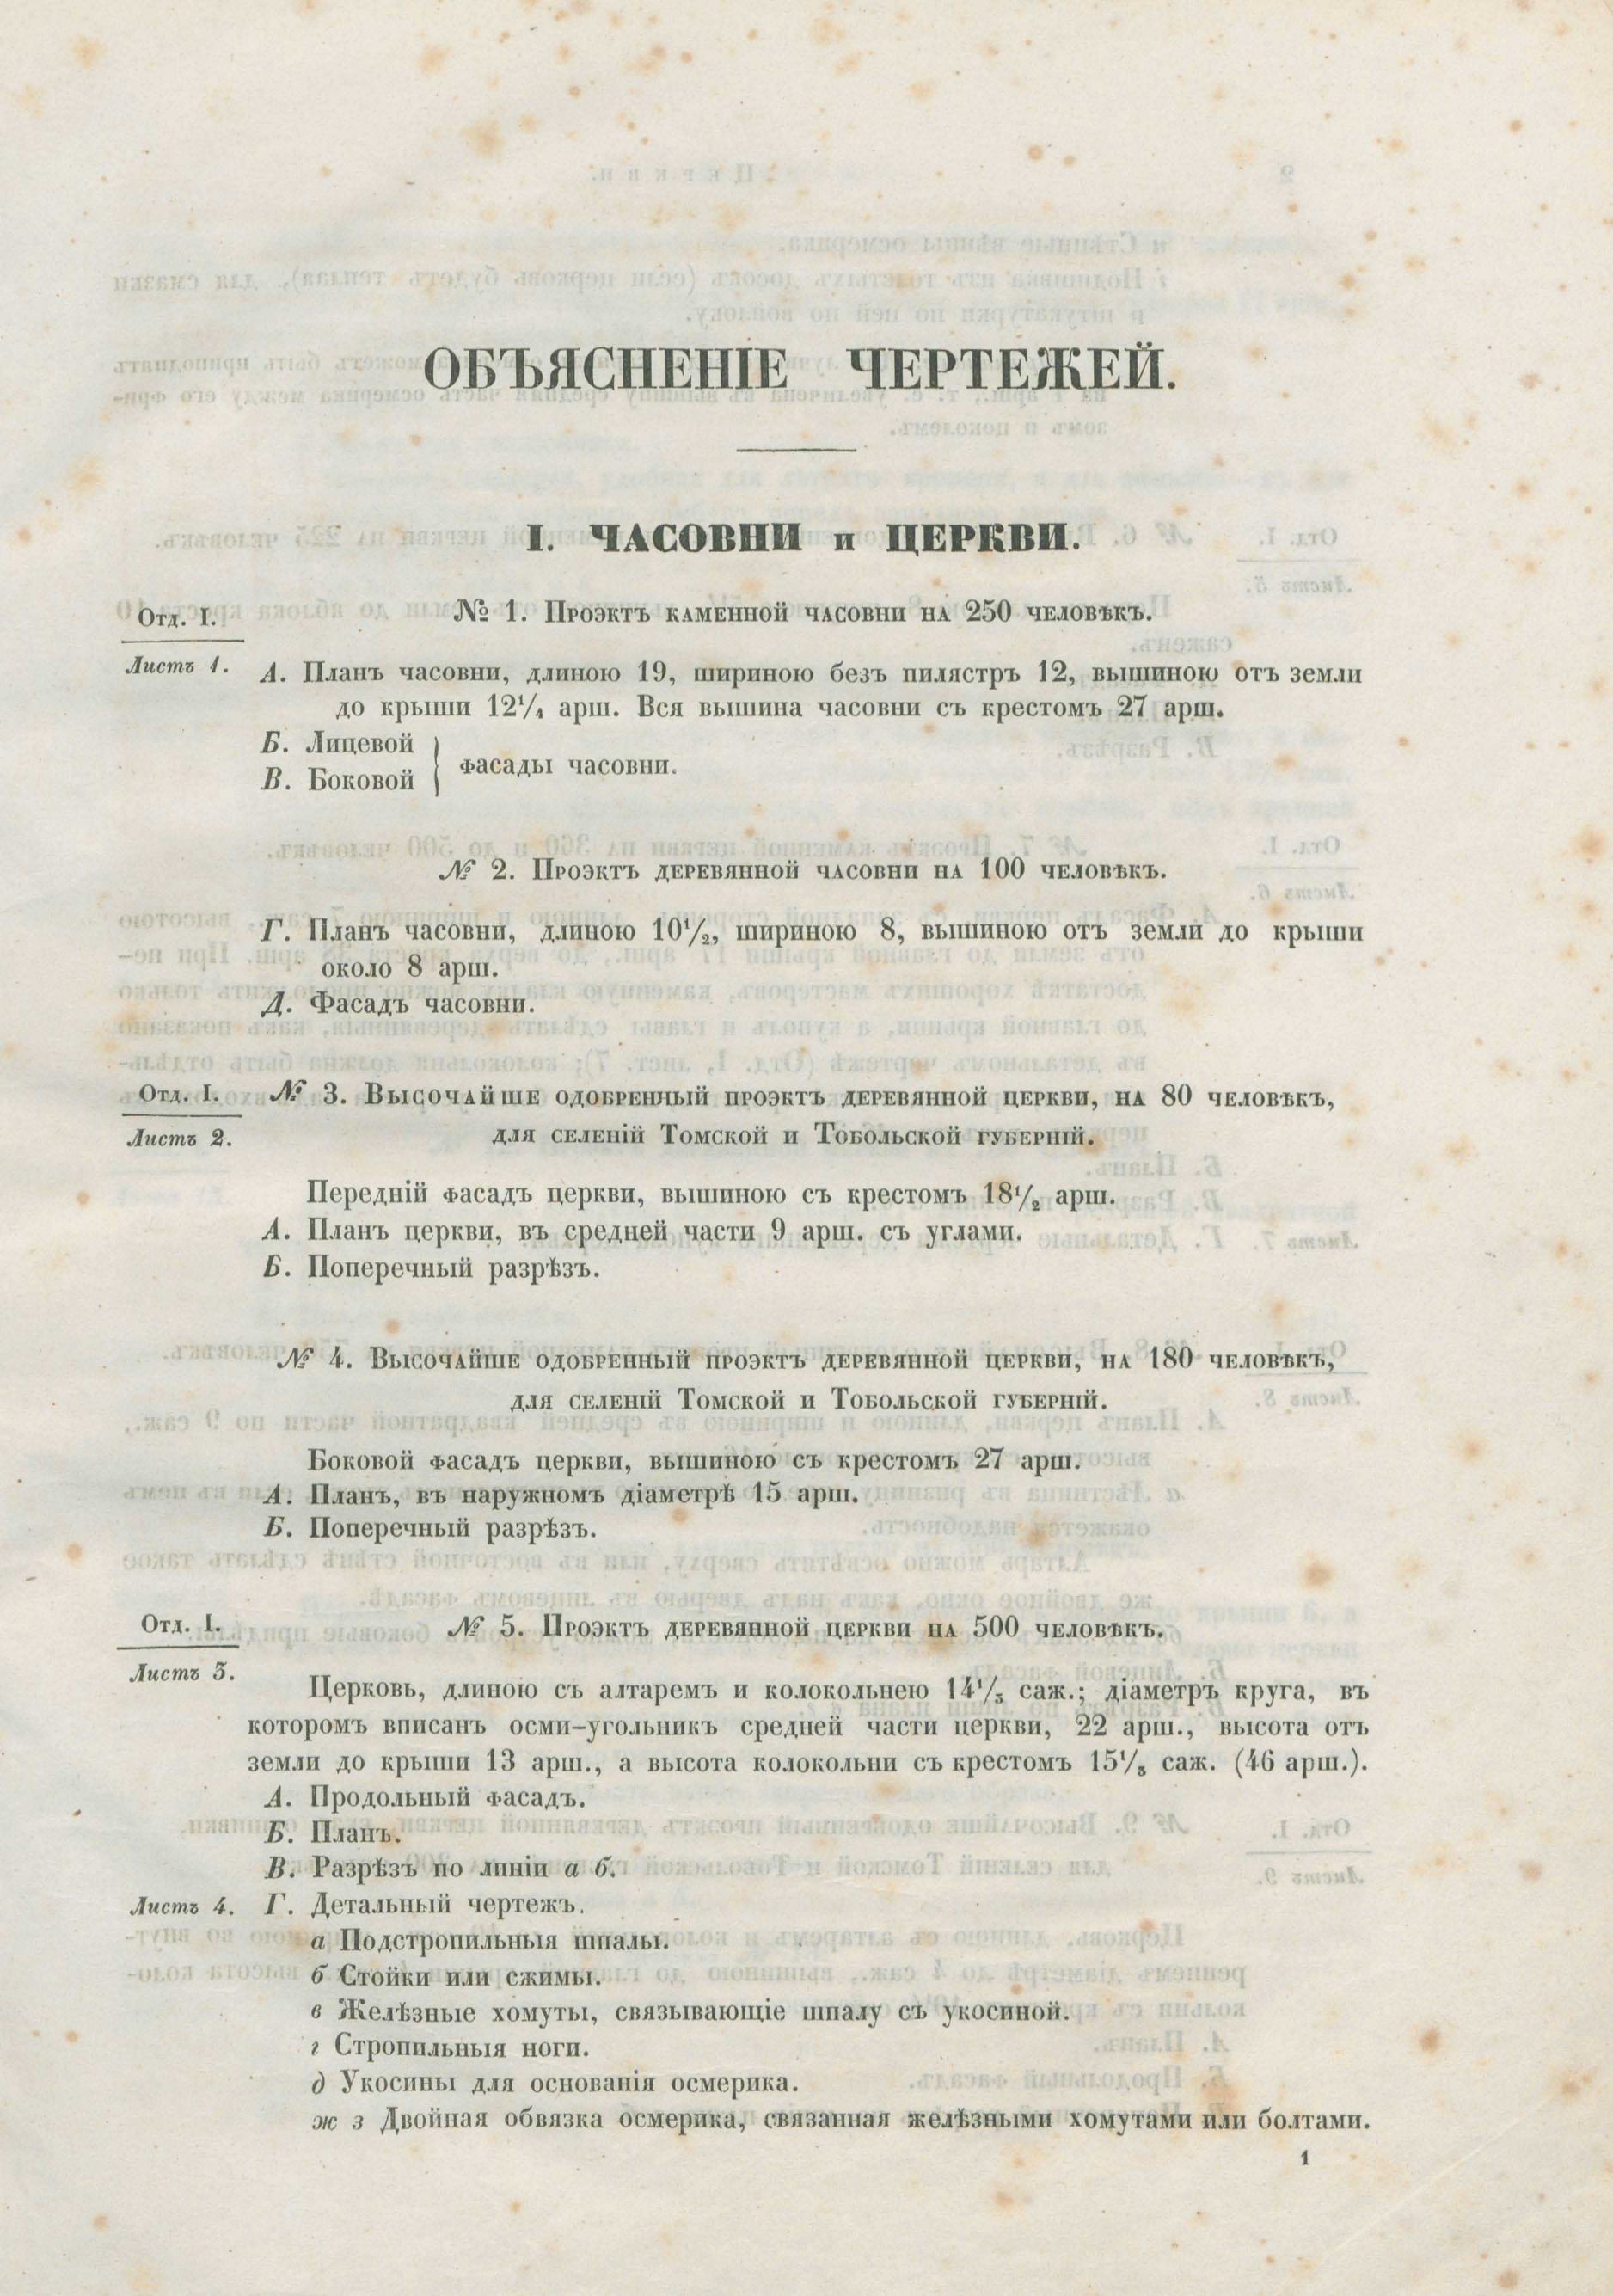 Атлас проектов и чертежей сельских построек, изданный от Департамента сельского хозяйства М.Г.И. — С.-Петербург, 1853